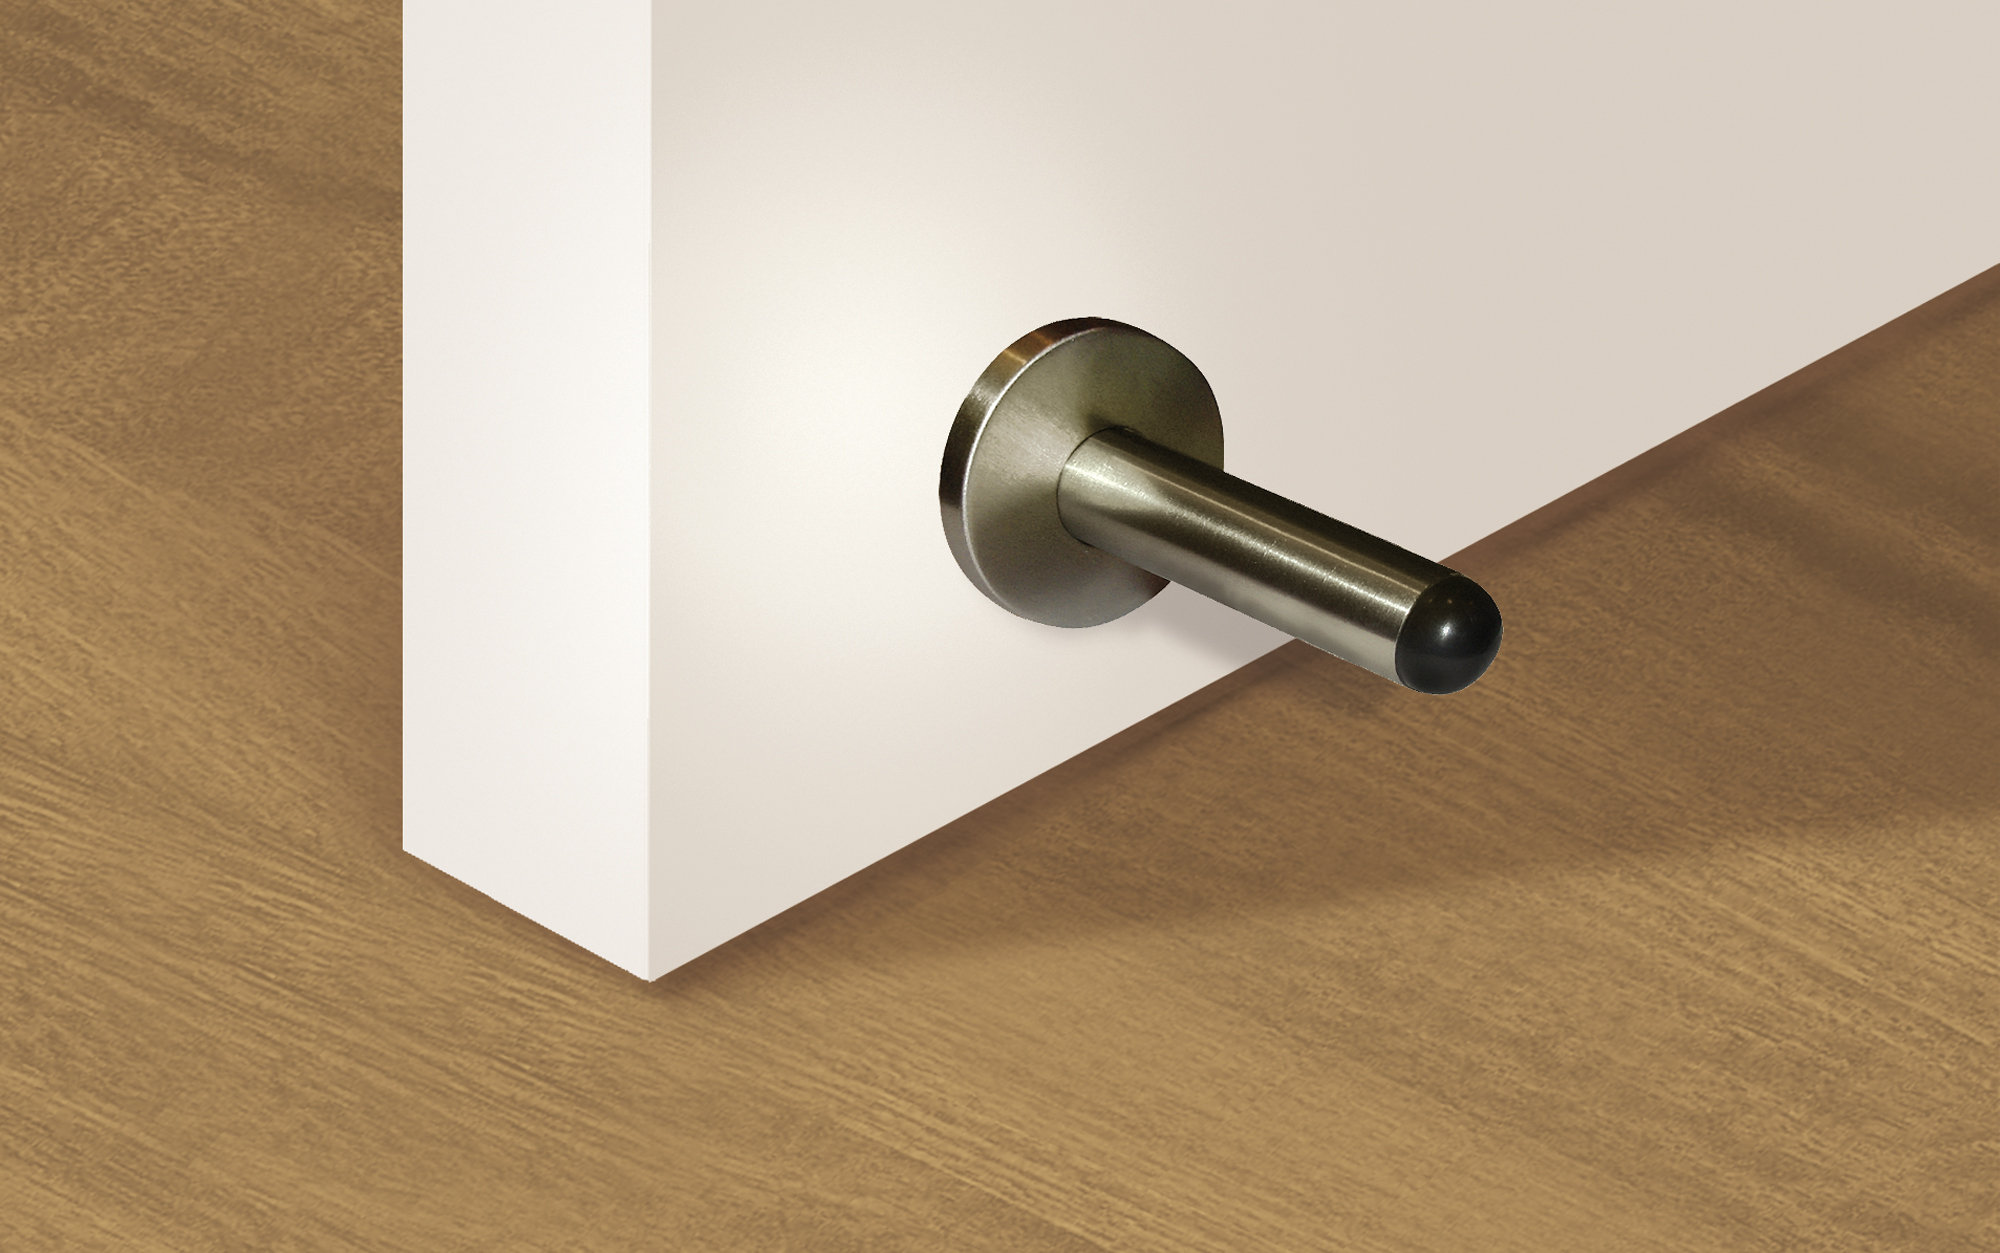 Retenedor de puerta con imán atornillable con acabado inox mate. Dimensiones: 44x36x38 mm - Ítem1